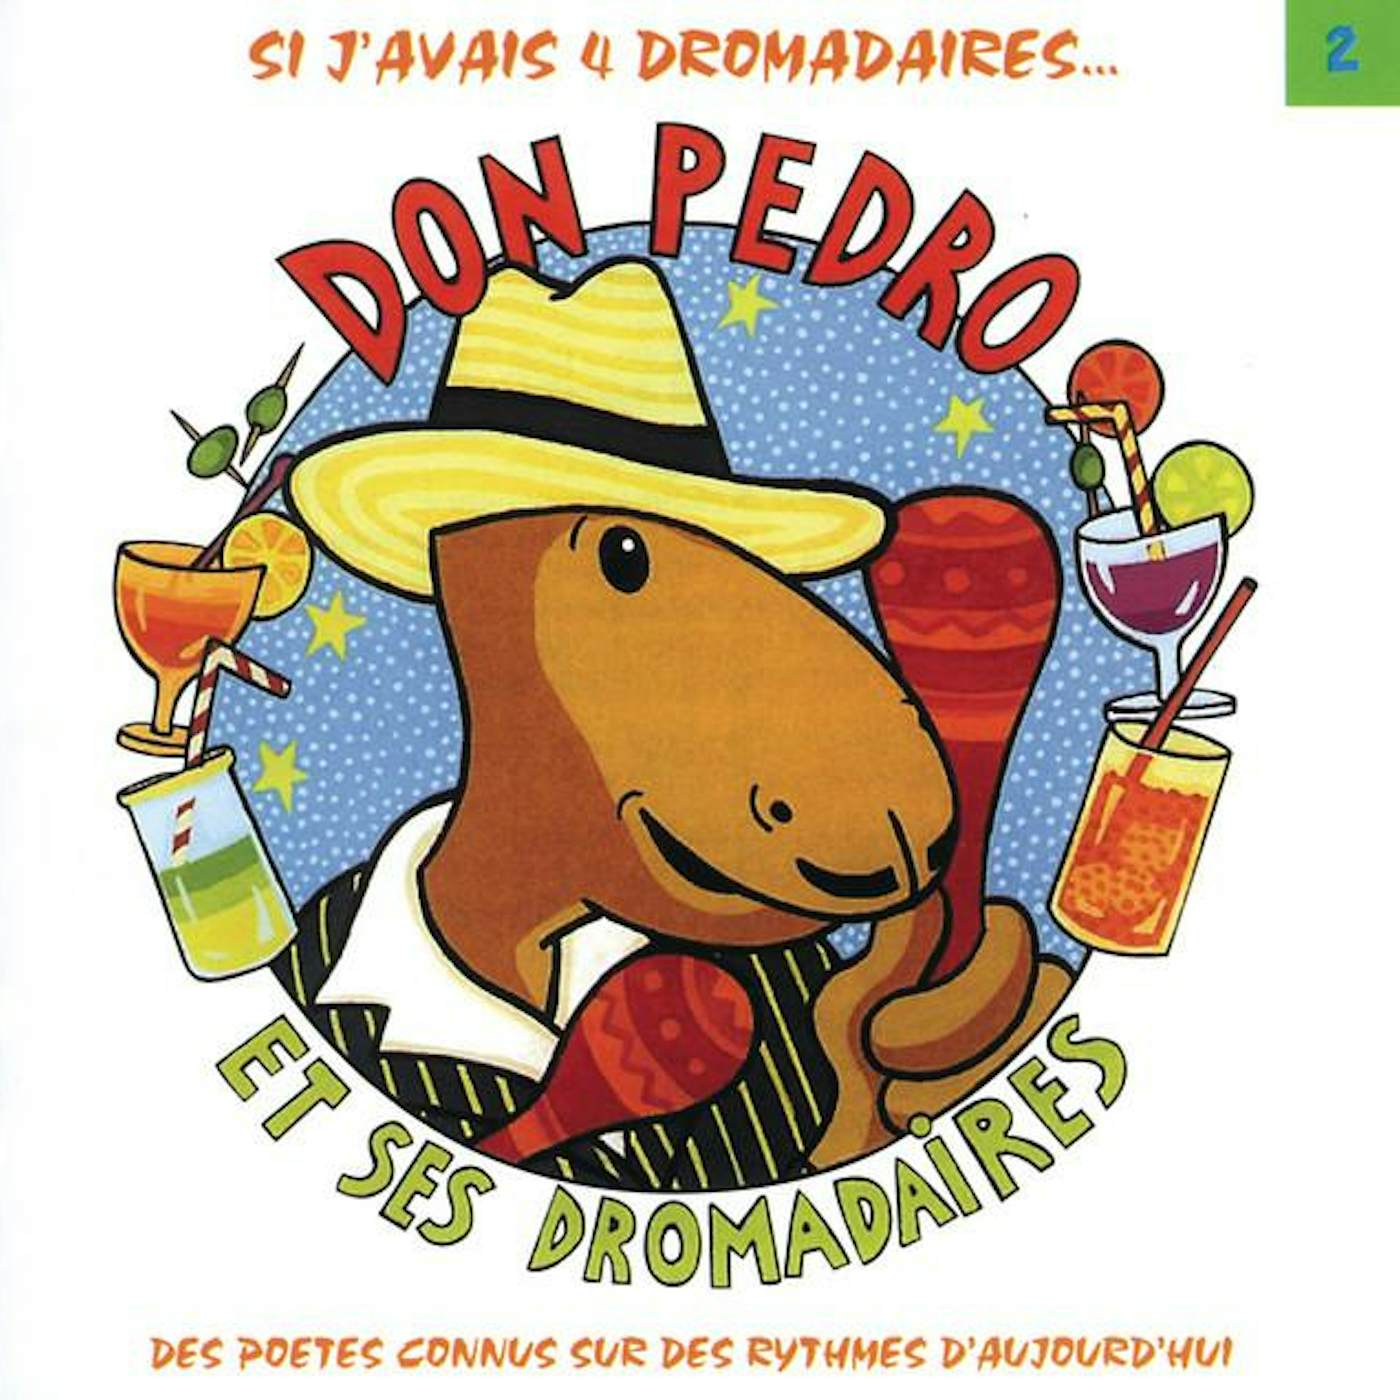 Don Pedro & Ses Dromadaires